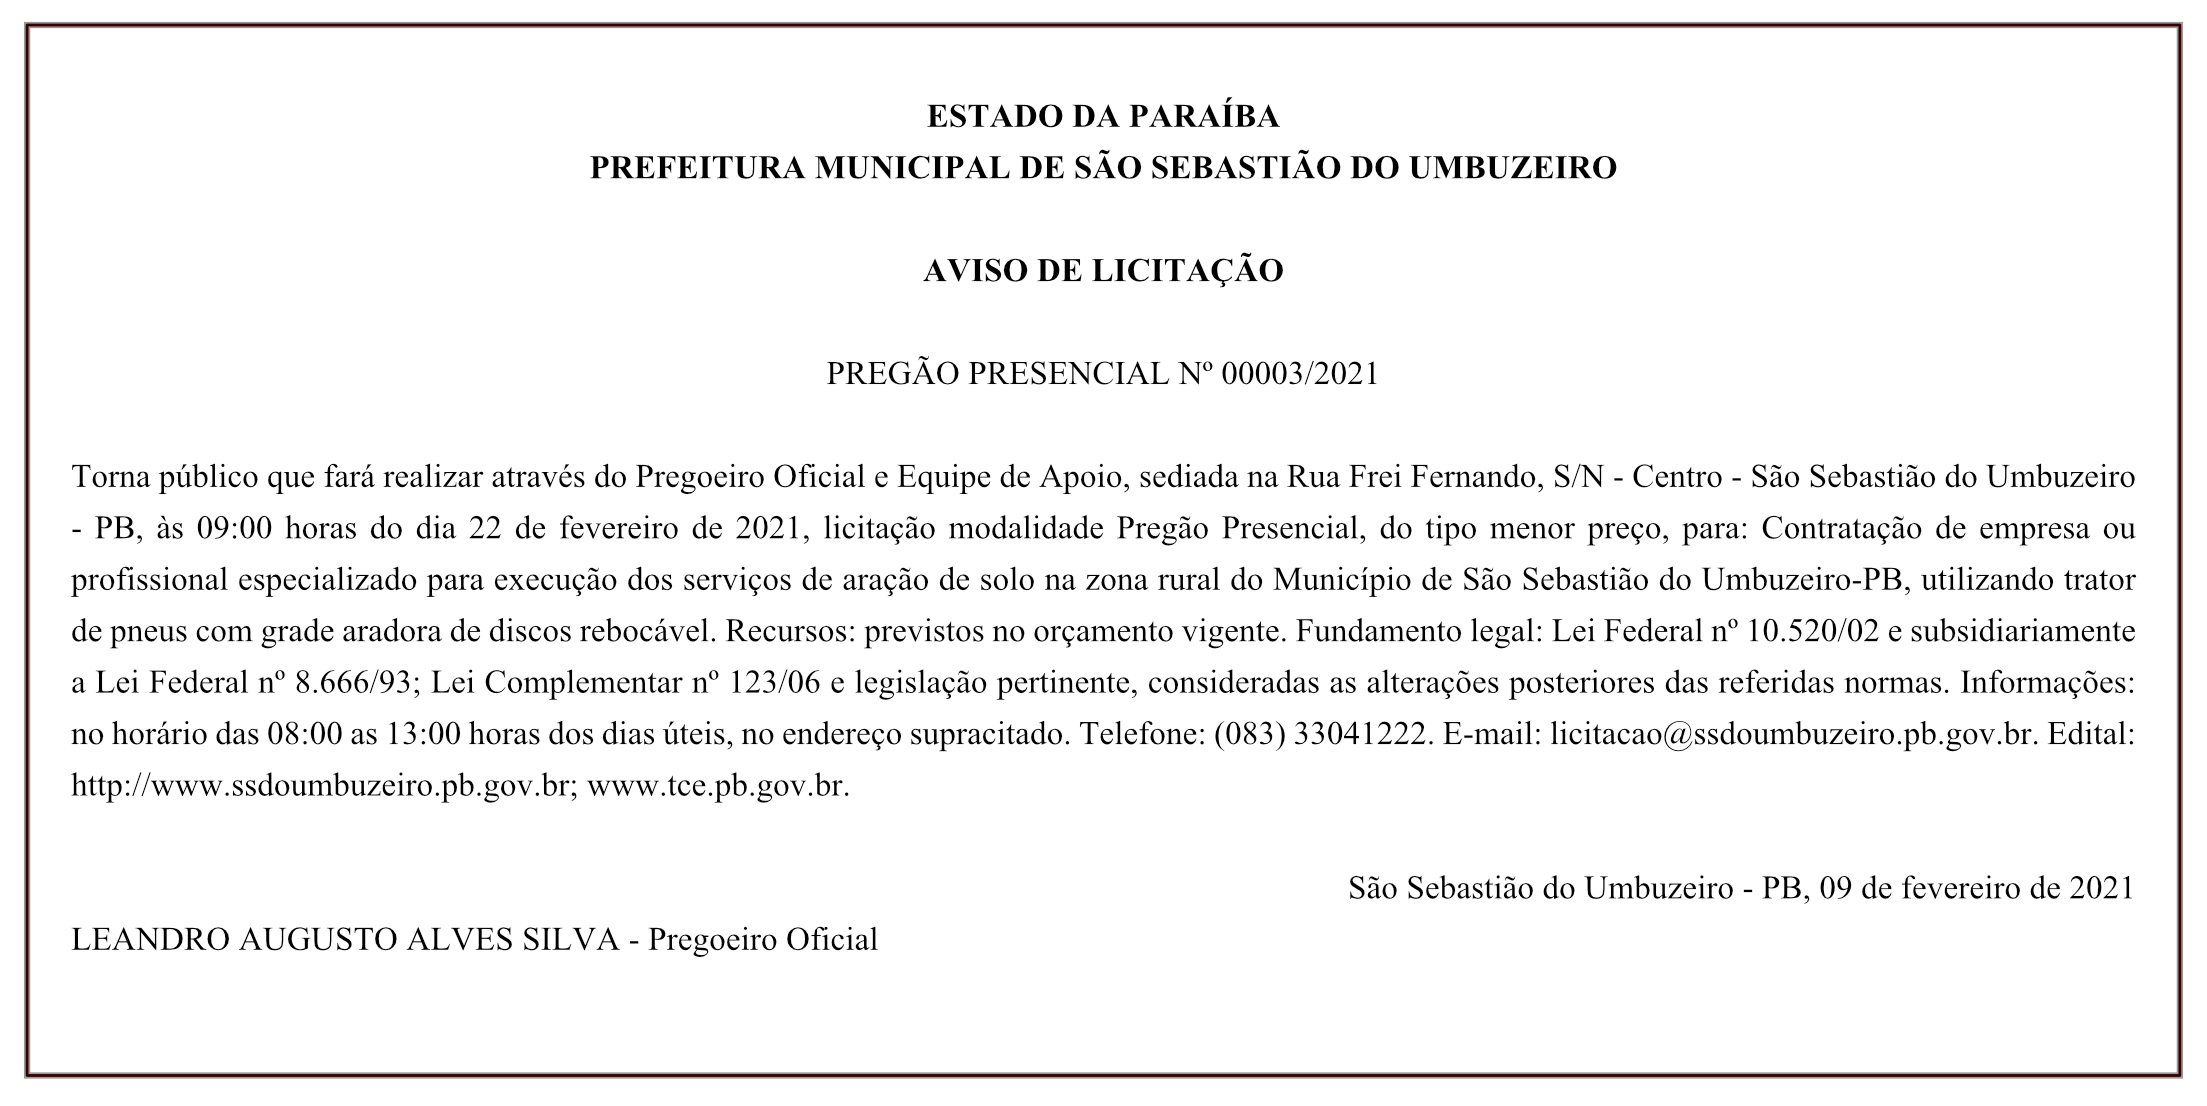 PREFEITURA MUNICIPAL DE SÃO SEBASTIÃO DO UMBUZEIRO – AVISO DE LICITAÇÃO – PREGÃO PRESENCIAL Nº 00003/2021